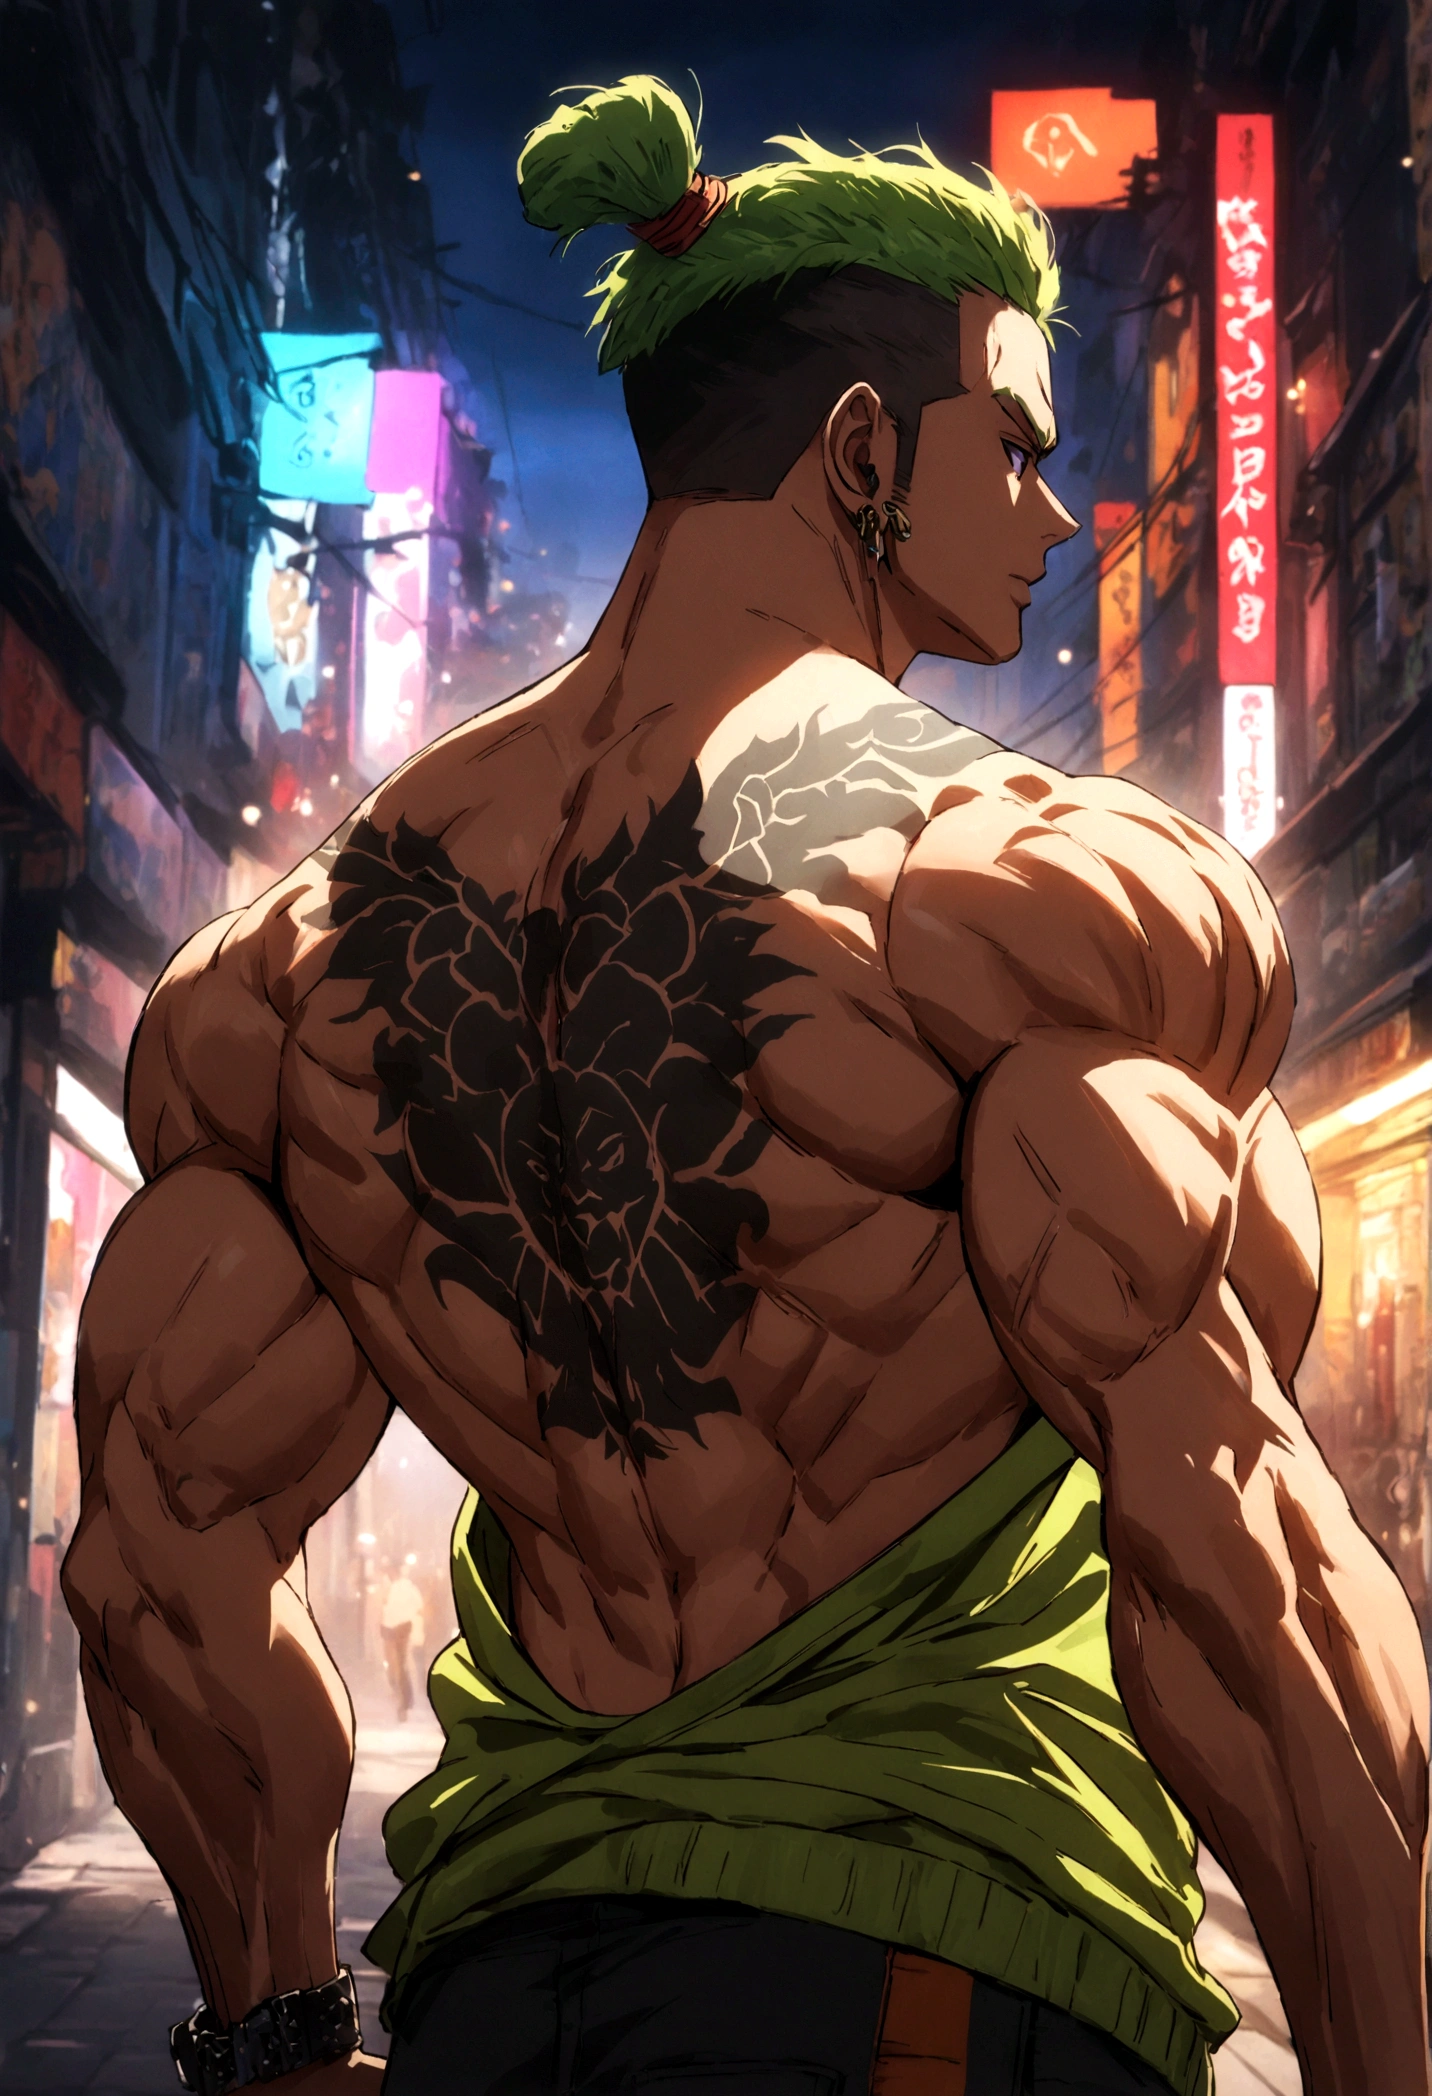 Chico fuerte y musculoso con tatuaje de Guan Yu en su tonificada espalda desnuda., estilo callejero, Detalles de alta resolución, Ambiente urbano, colores vibrantes, iluminación dramática